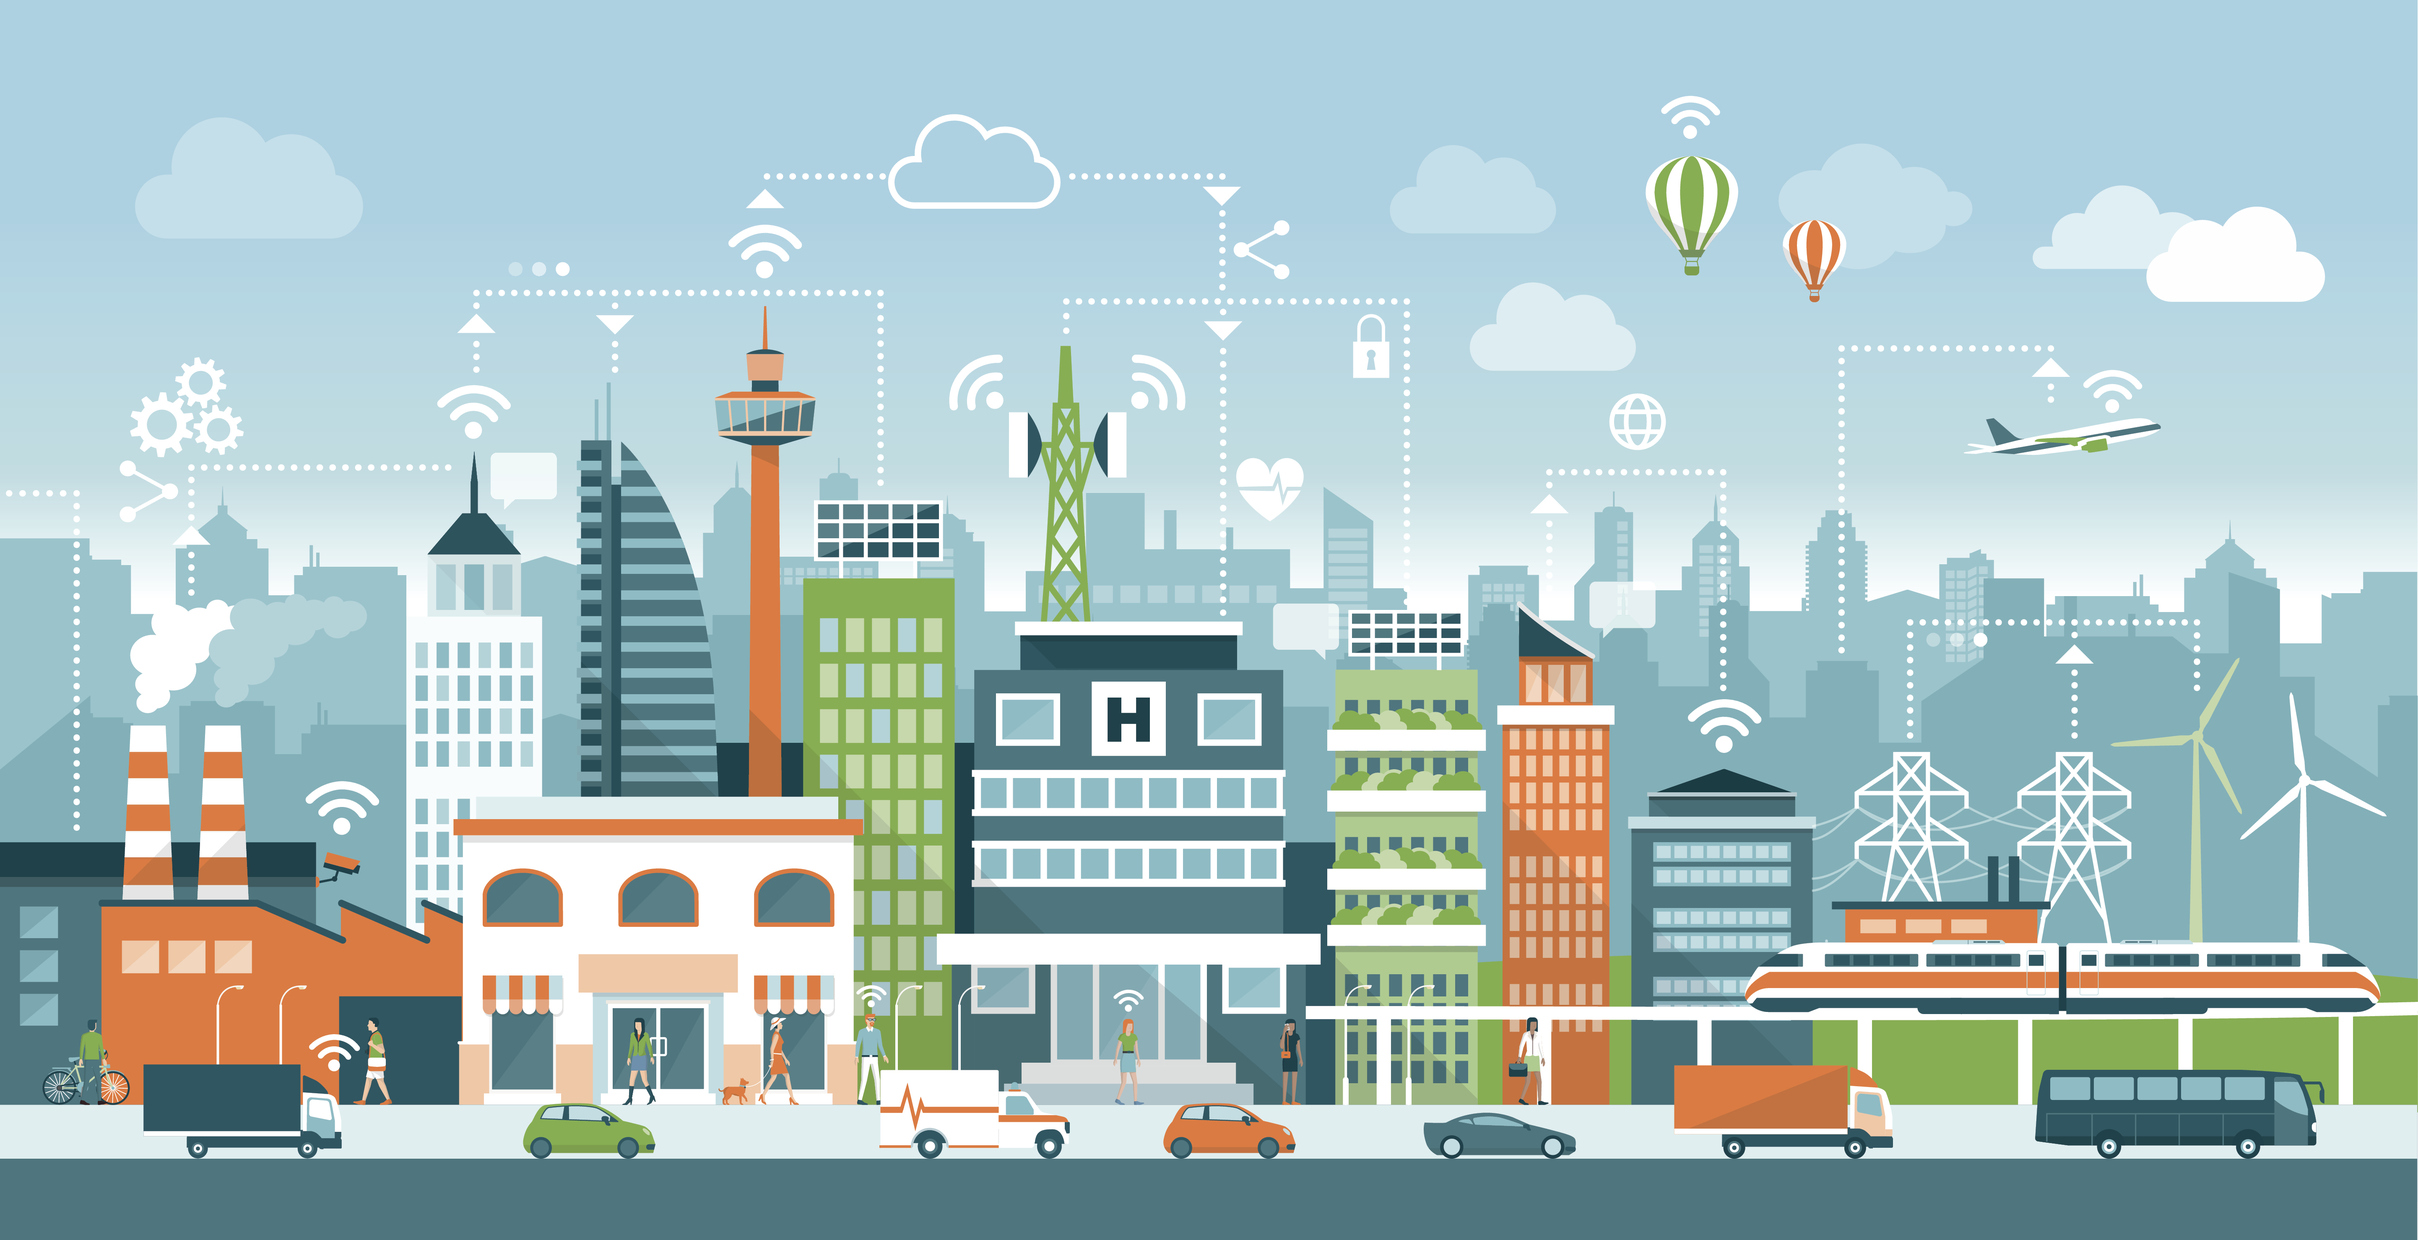 Rumbo a las Smart Cities de la mano del Internet de las Cosas